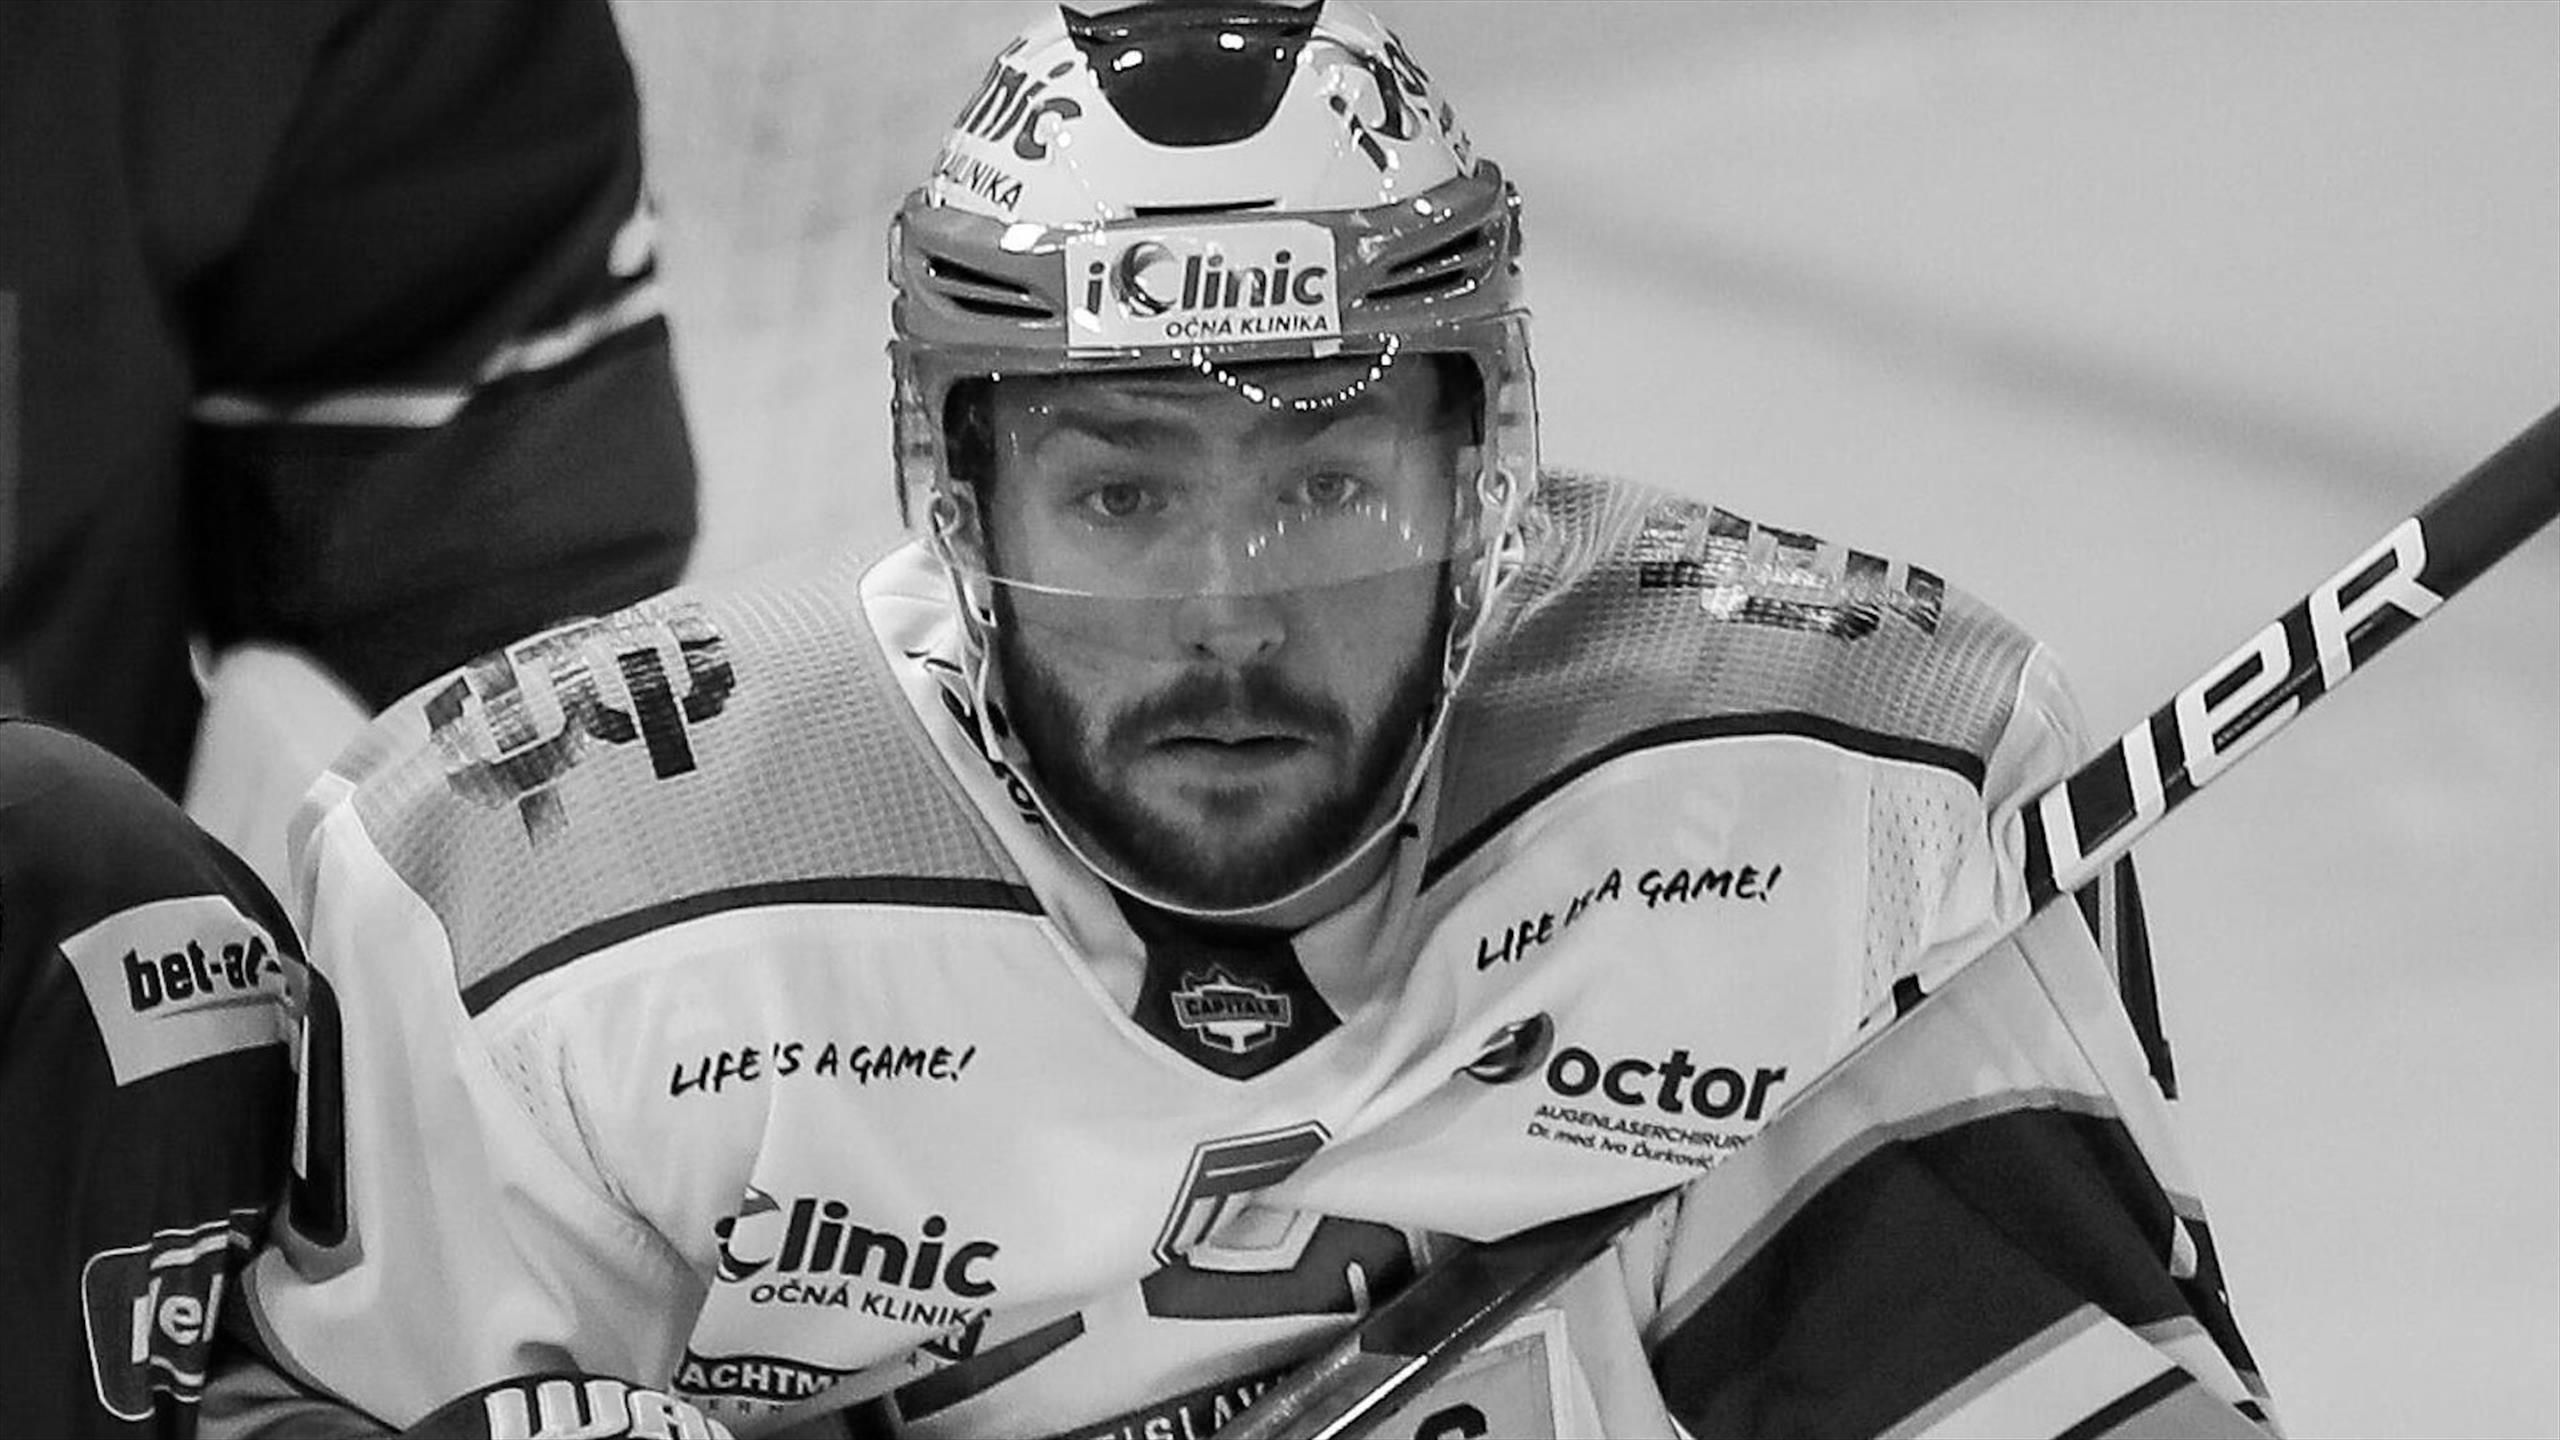 Boris Sadecky Slowenischer Eishockeyspieler nach Zusammenbruch auf dem Eis mit nur 24 Jahren verstorben